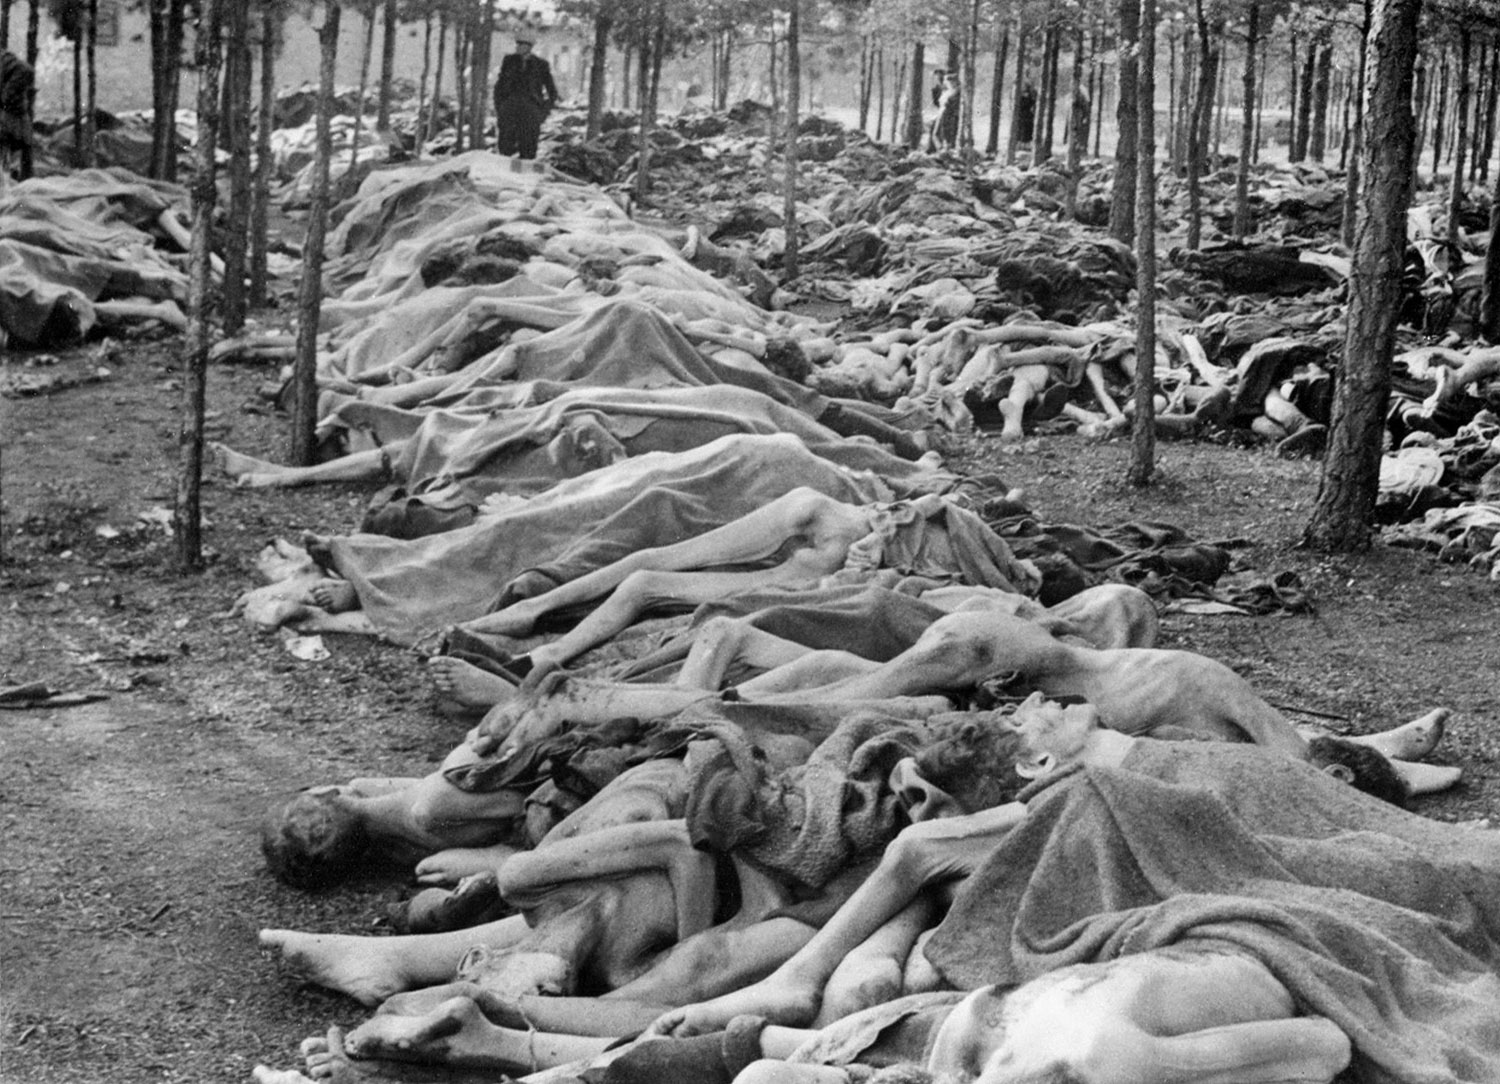 тела изможденных узников лежат на территории концлагеря, фото второй мировой войны